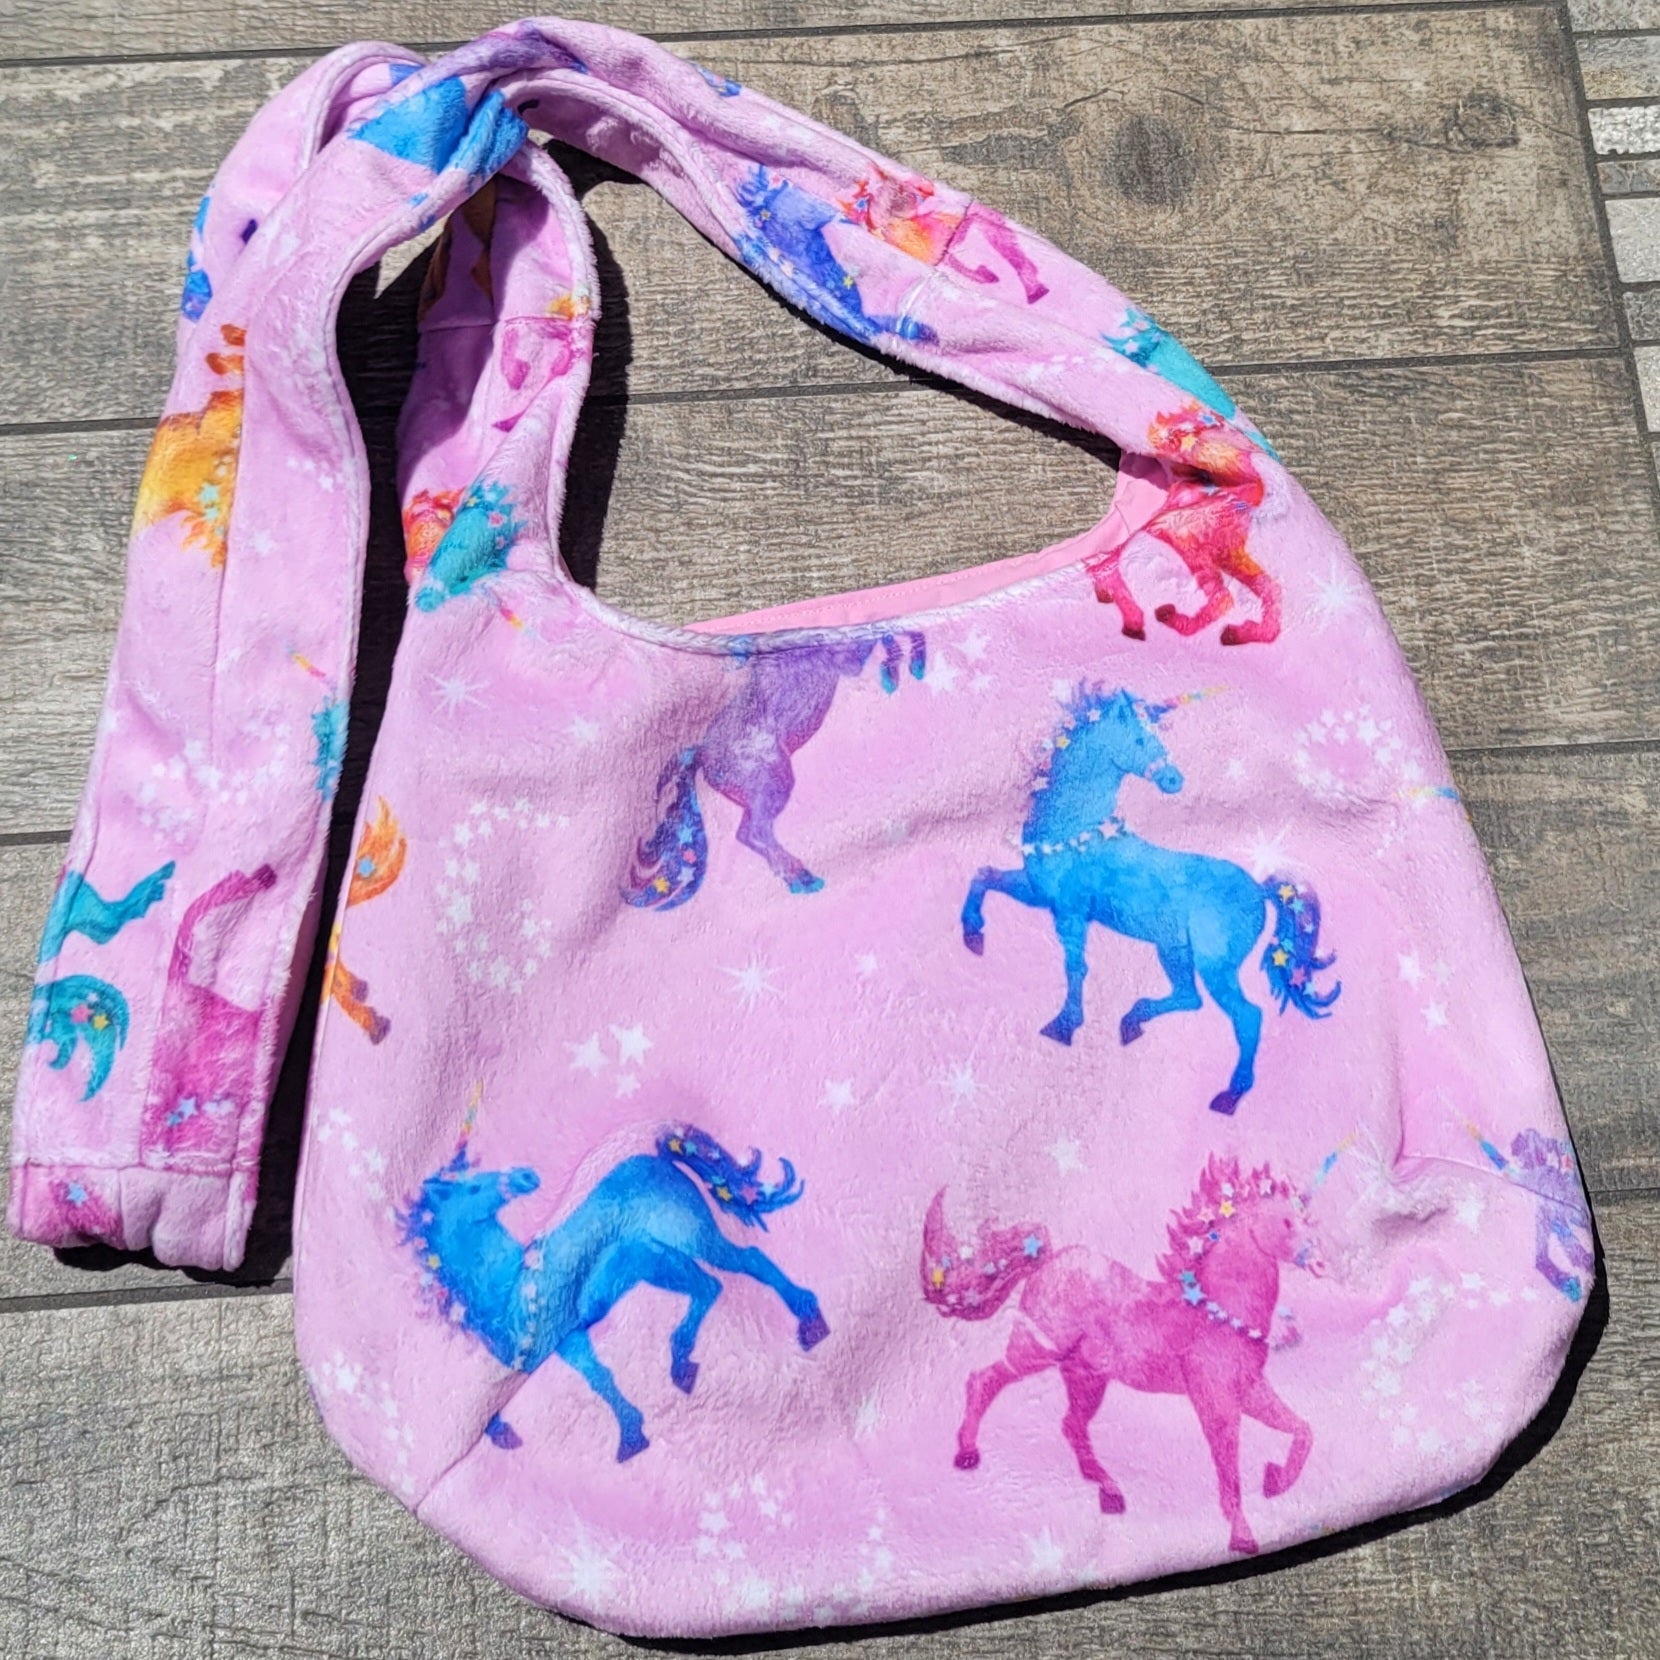 Plush unicorn handbag